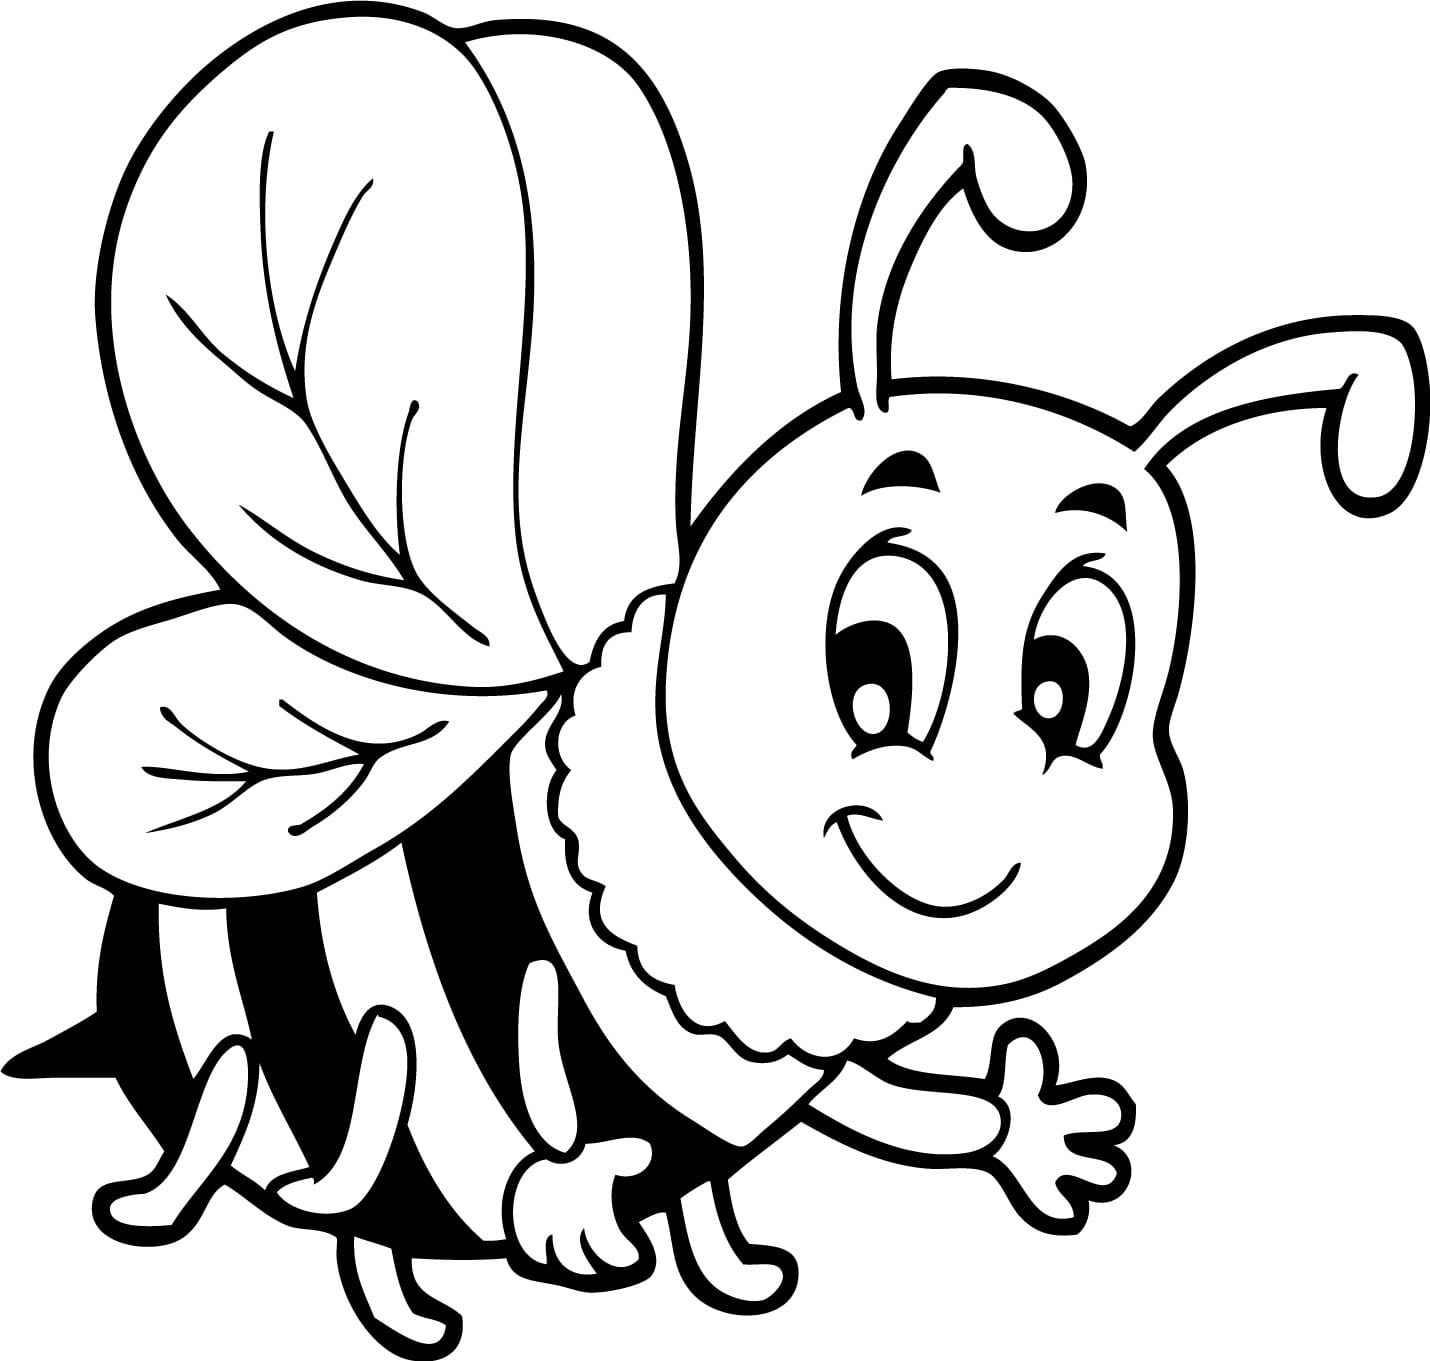 Пчёлки картинки для детей раскраска